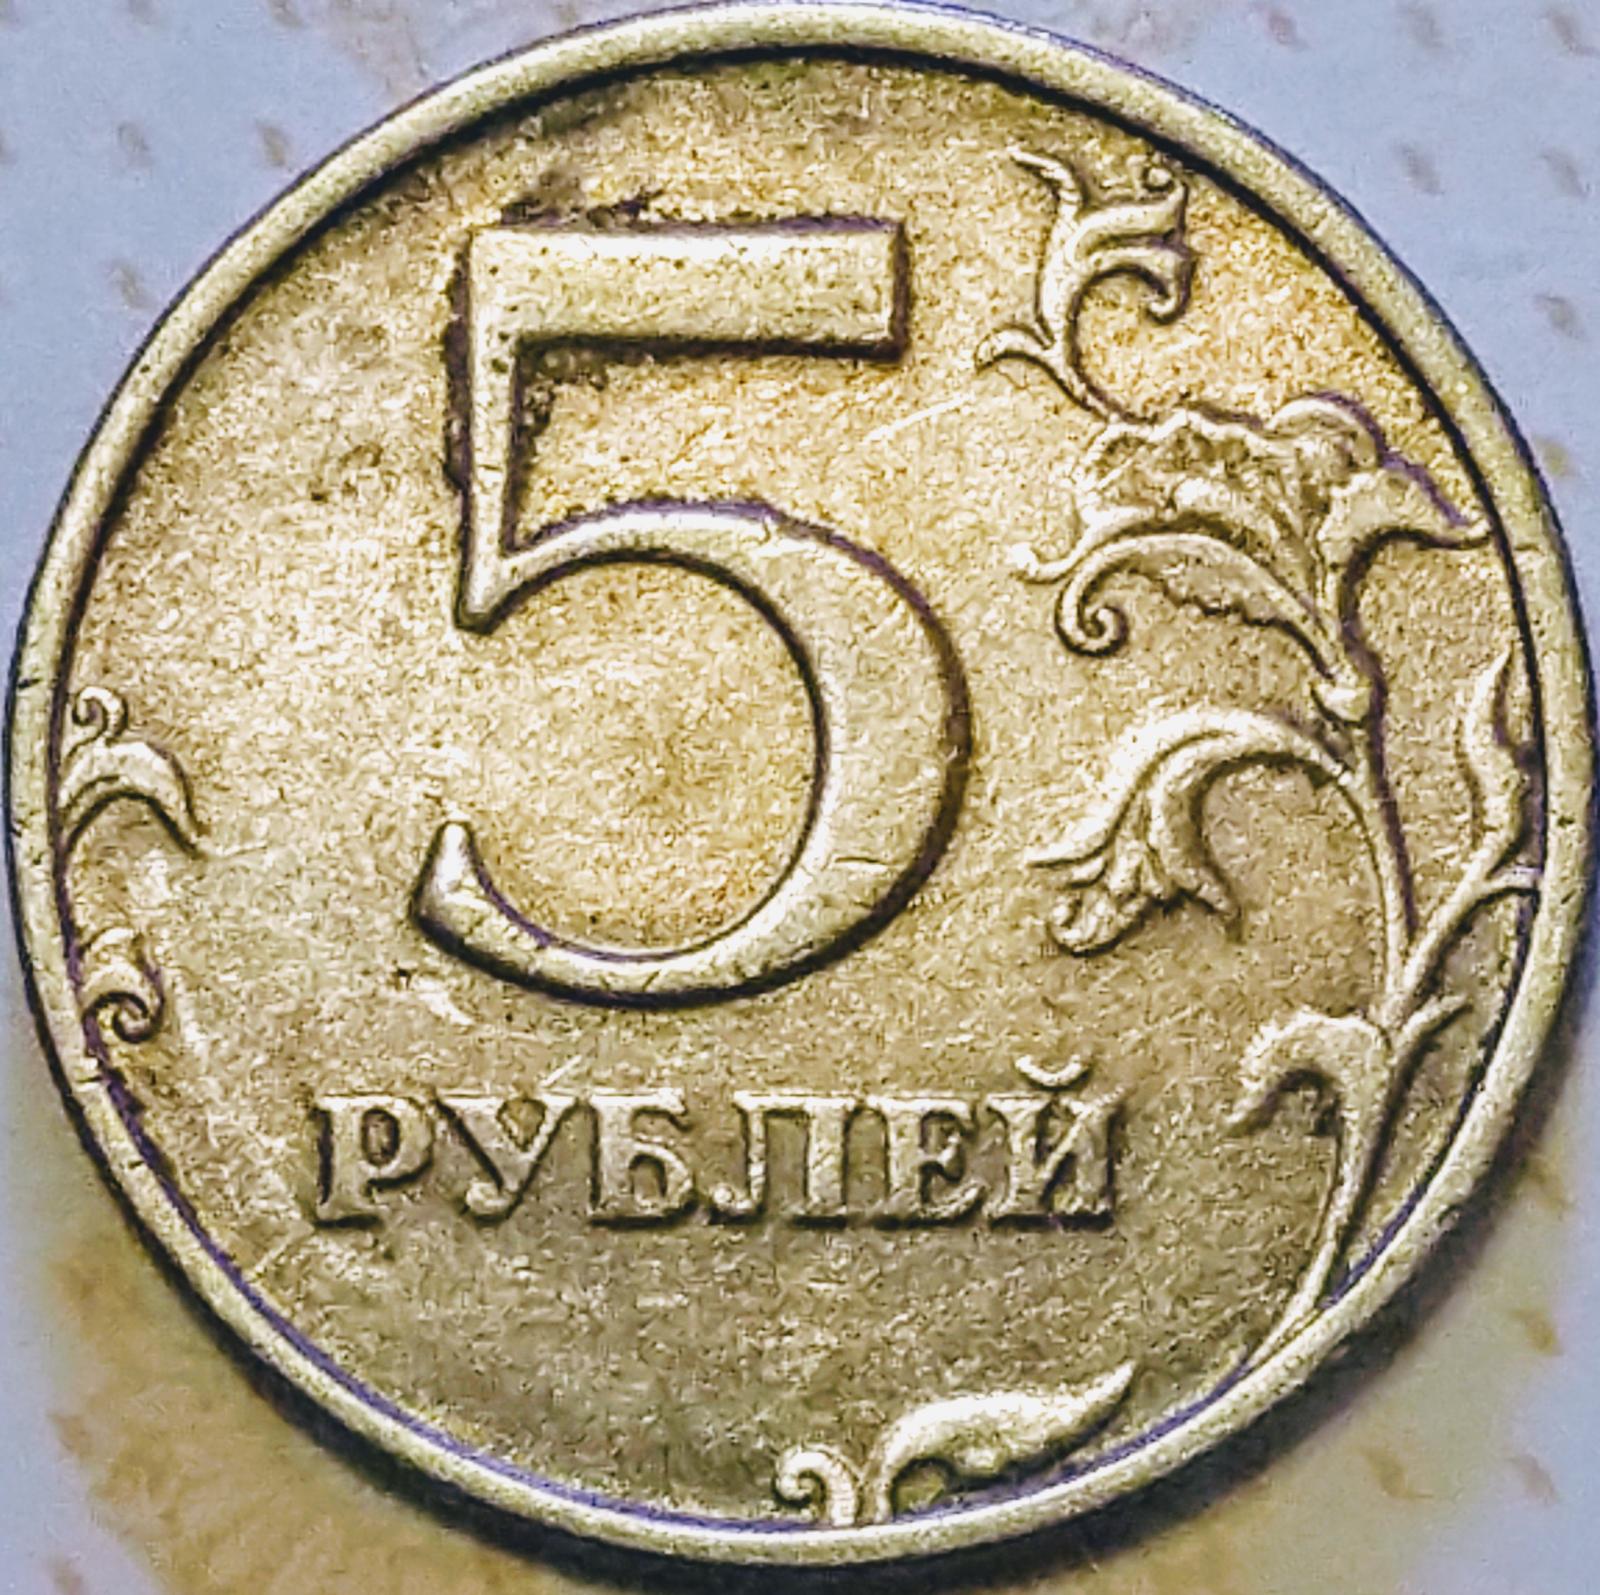 5 рублей события. Монета 5 рублей 1998 СПМД. 5 Рублей 1998 года. Штемпель 2.23 5 рублей. 5 Рублей с малой точкой.